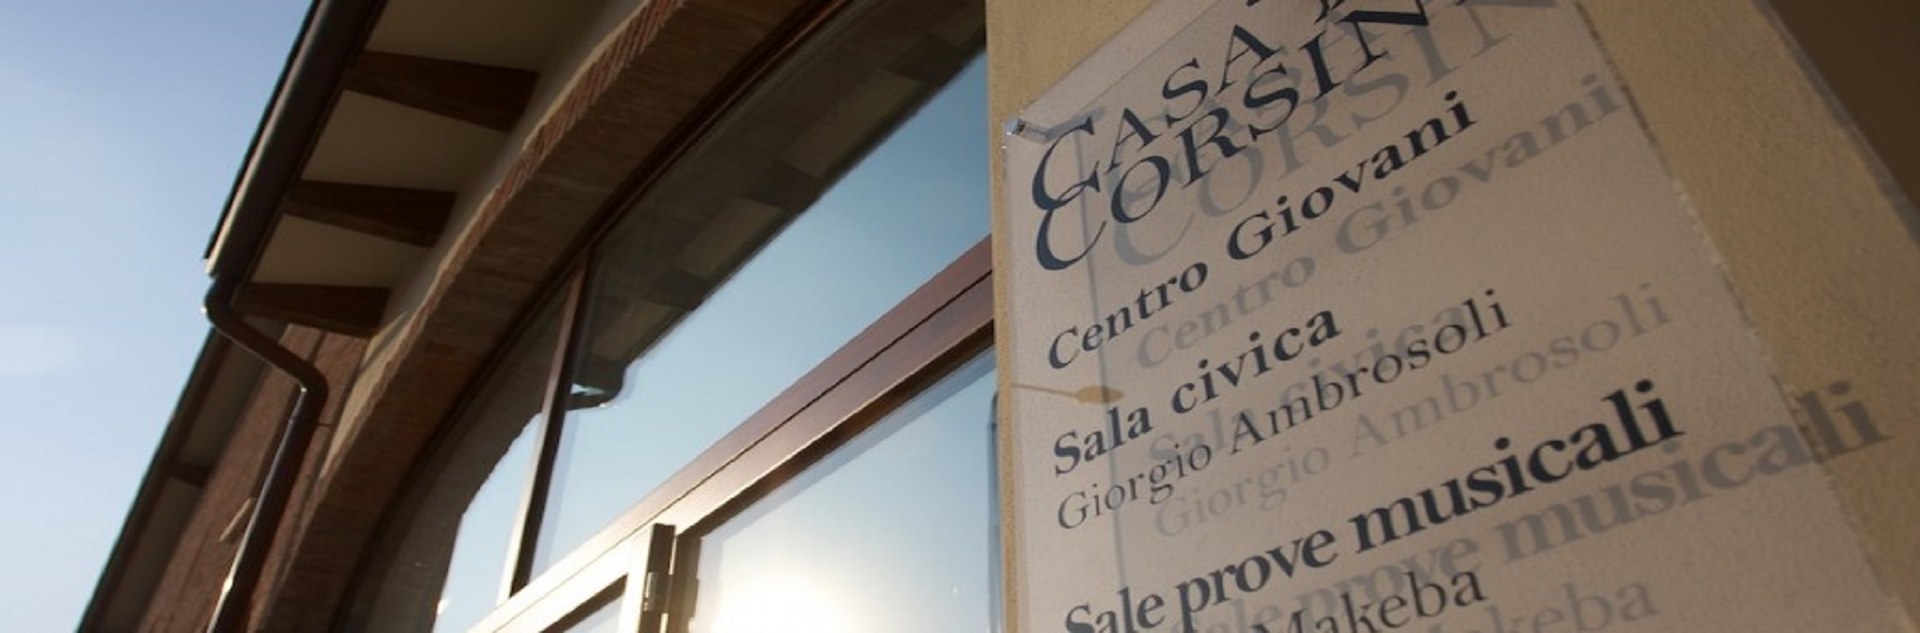 Casa Corsini Event Centre